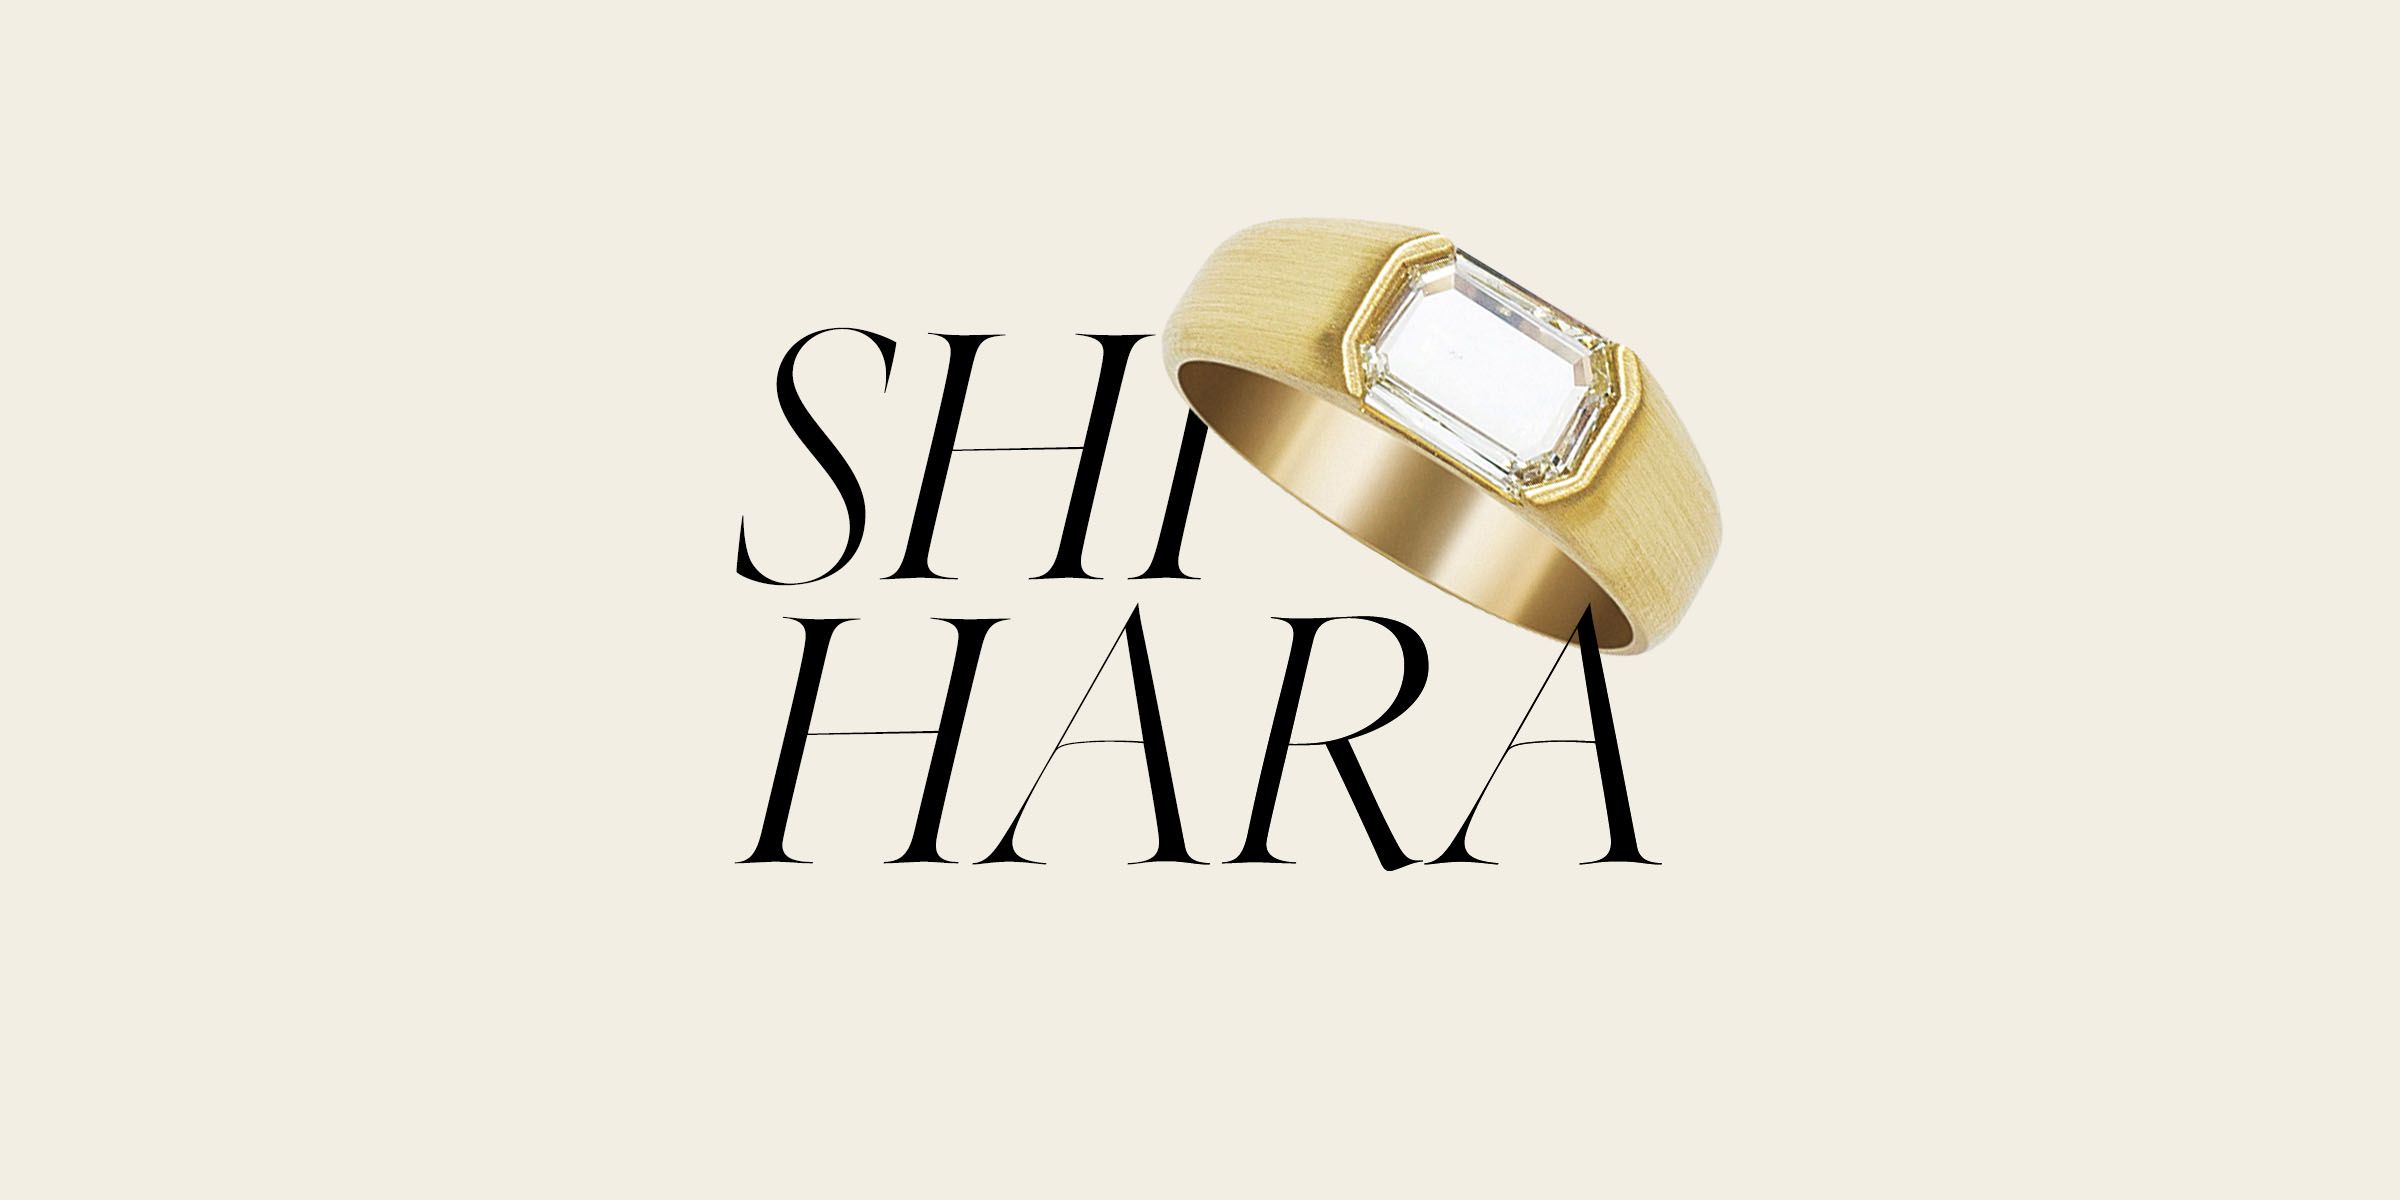 新座販売shihara シハラ / プレートリング 5.0 アクセサリー